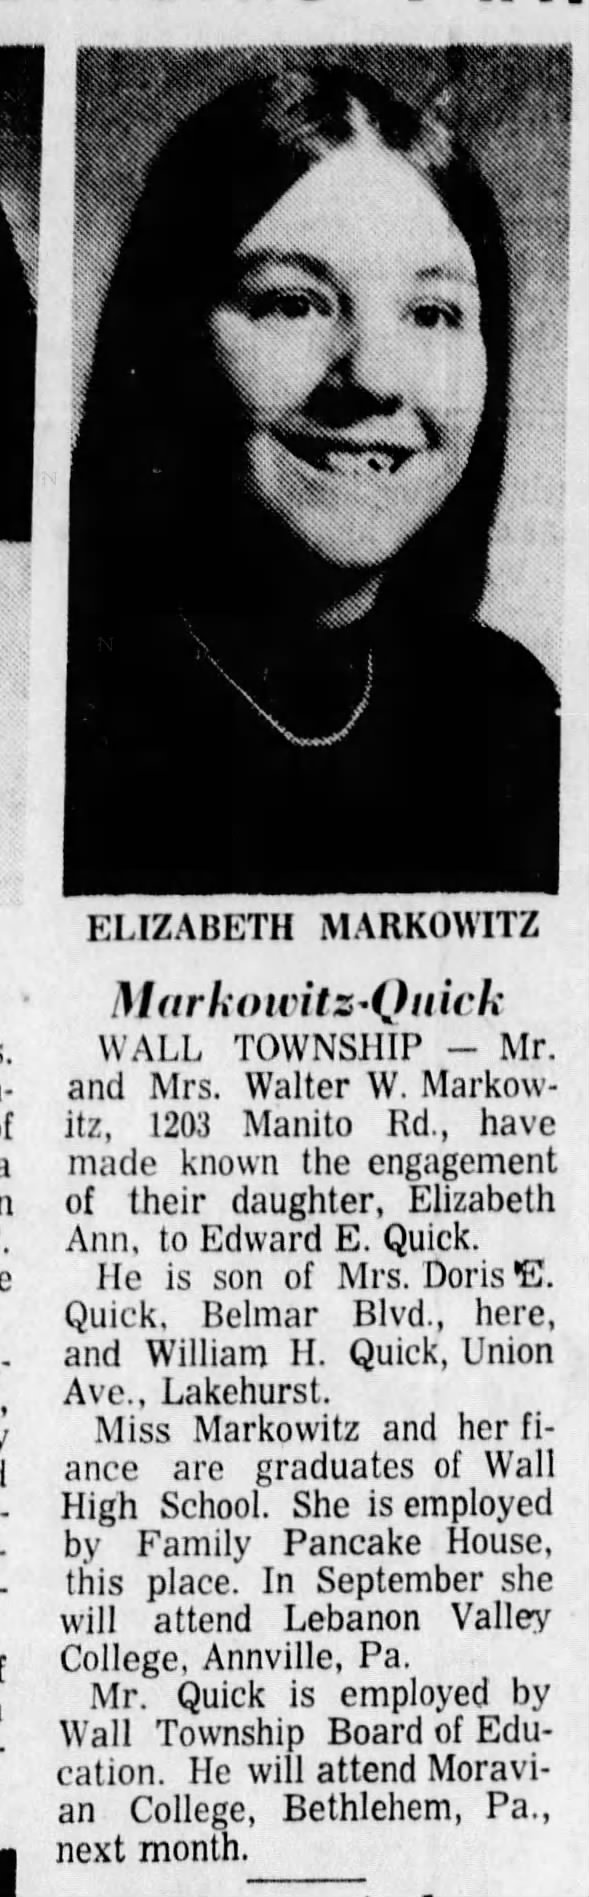 Edward E Quick engaged to Elizabeth Markowitz